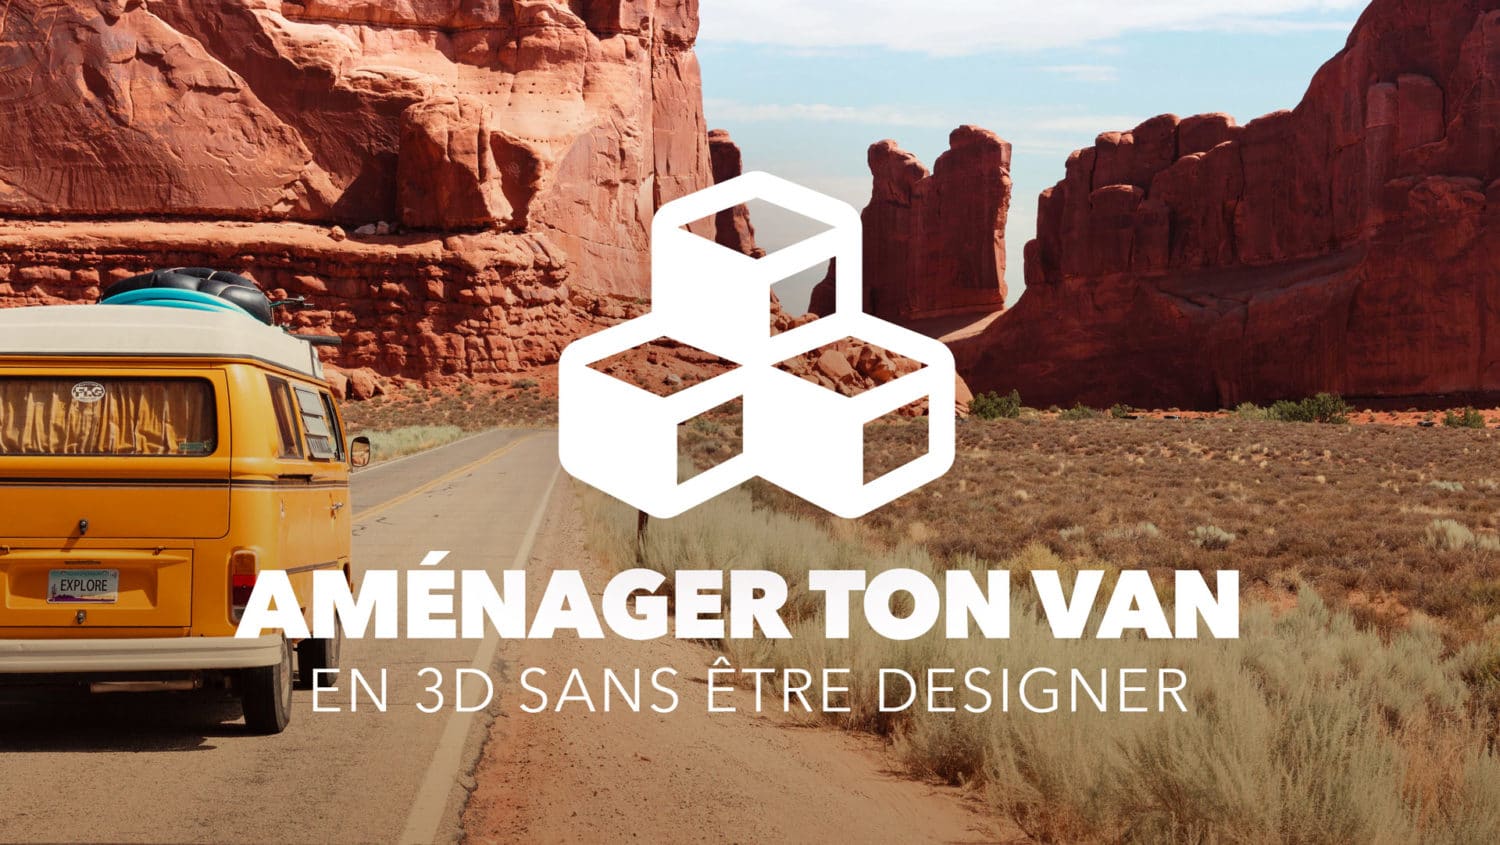 La formation "Aménager ton van en 3D sans être designer" - Campus des Créateurs Nomades.